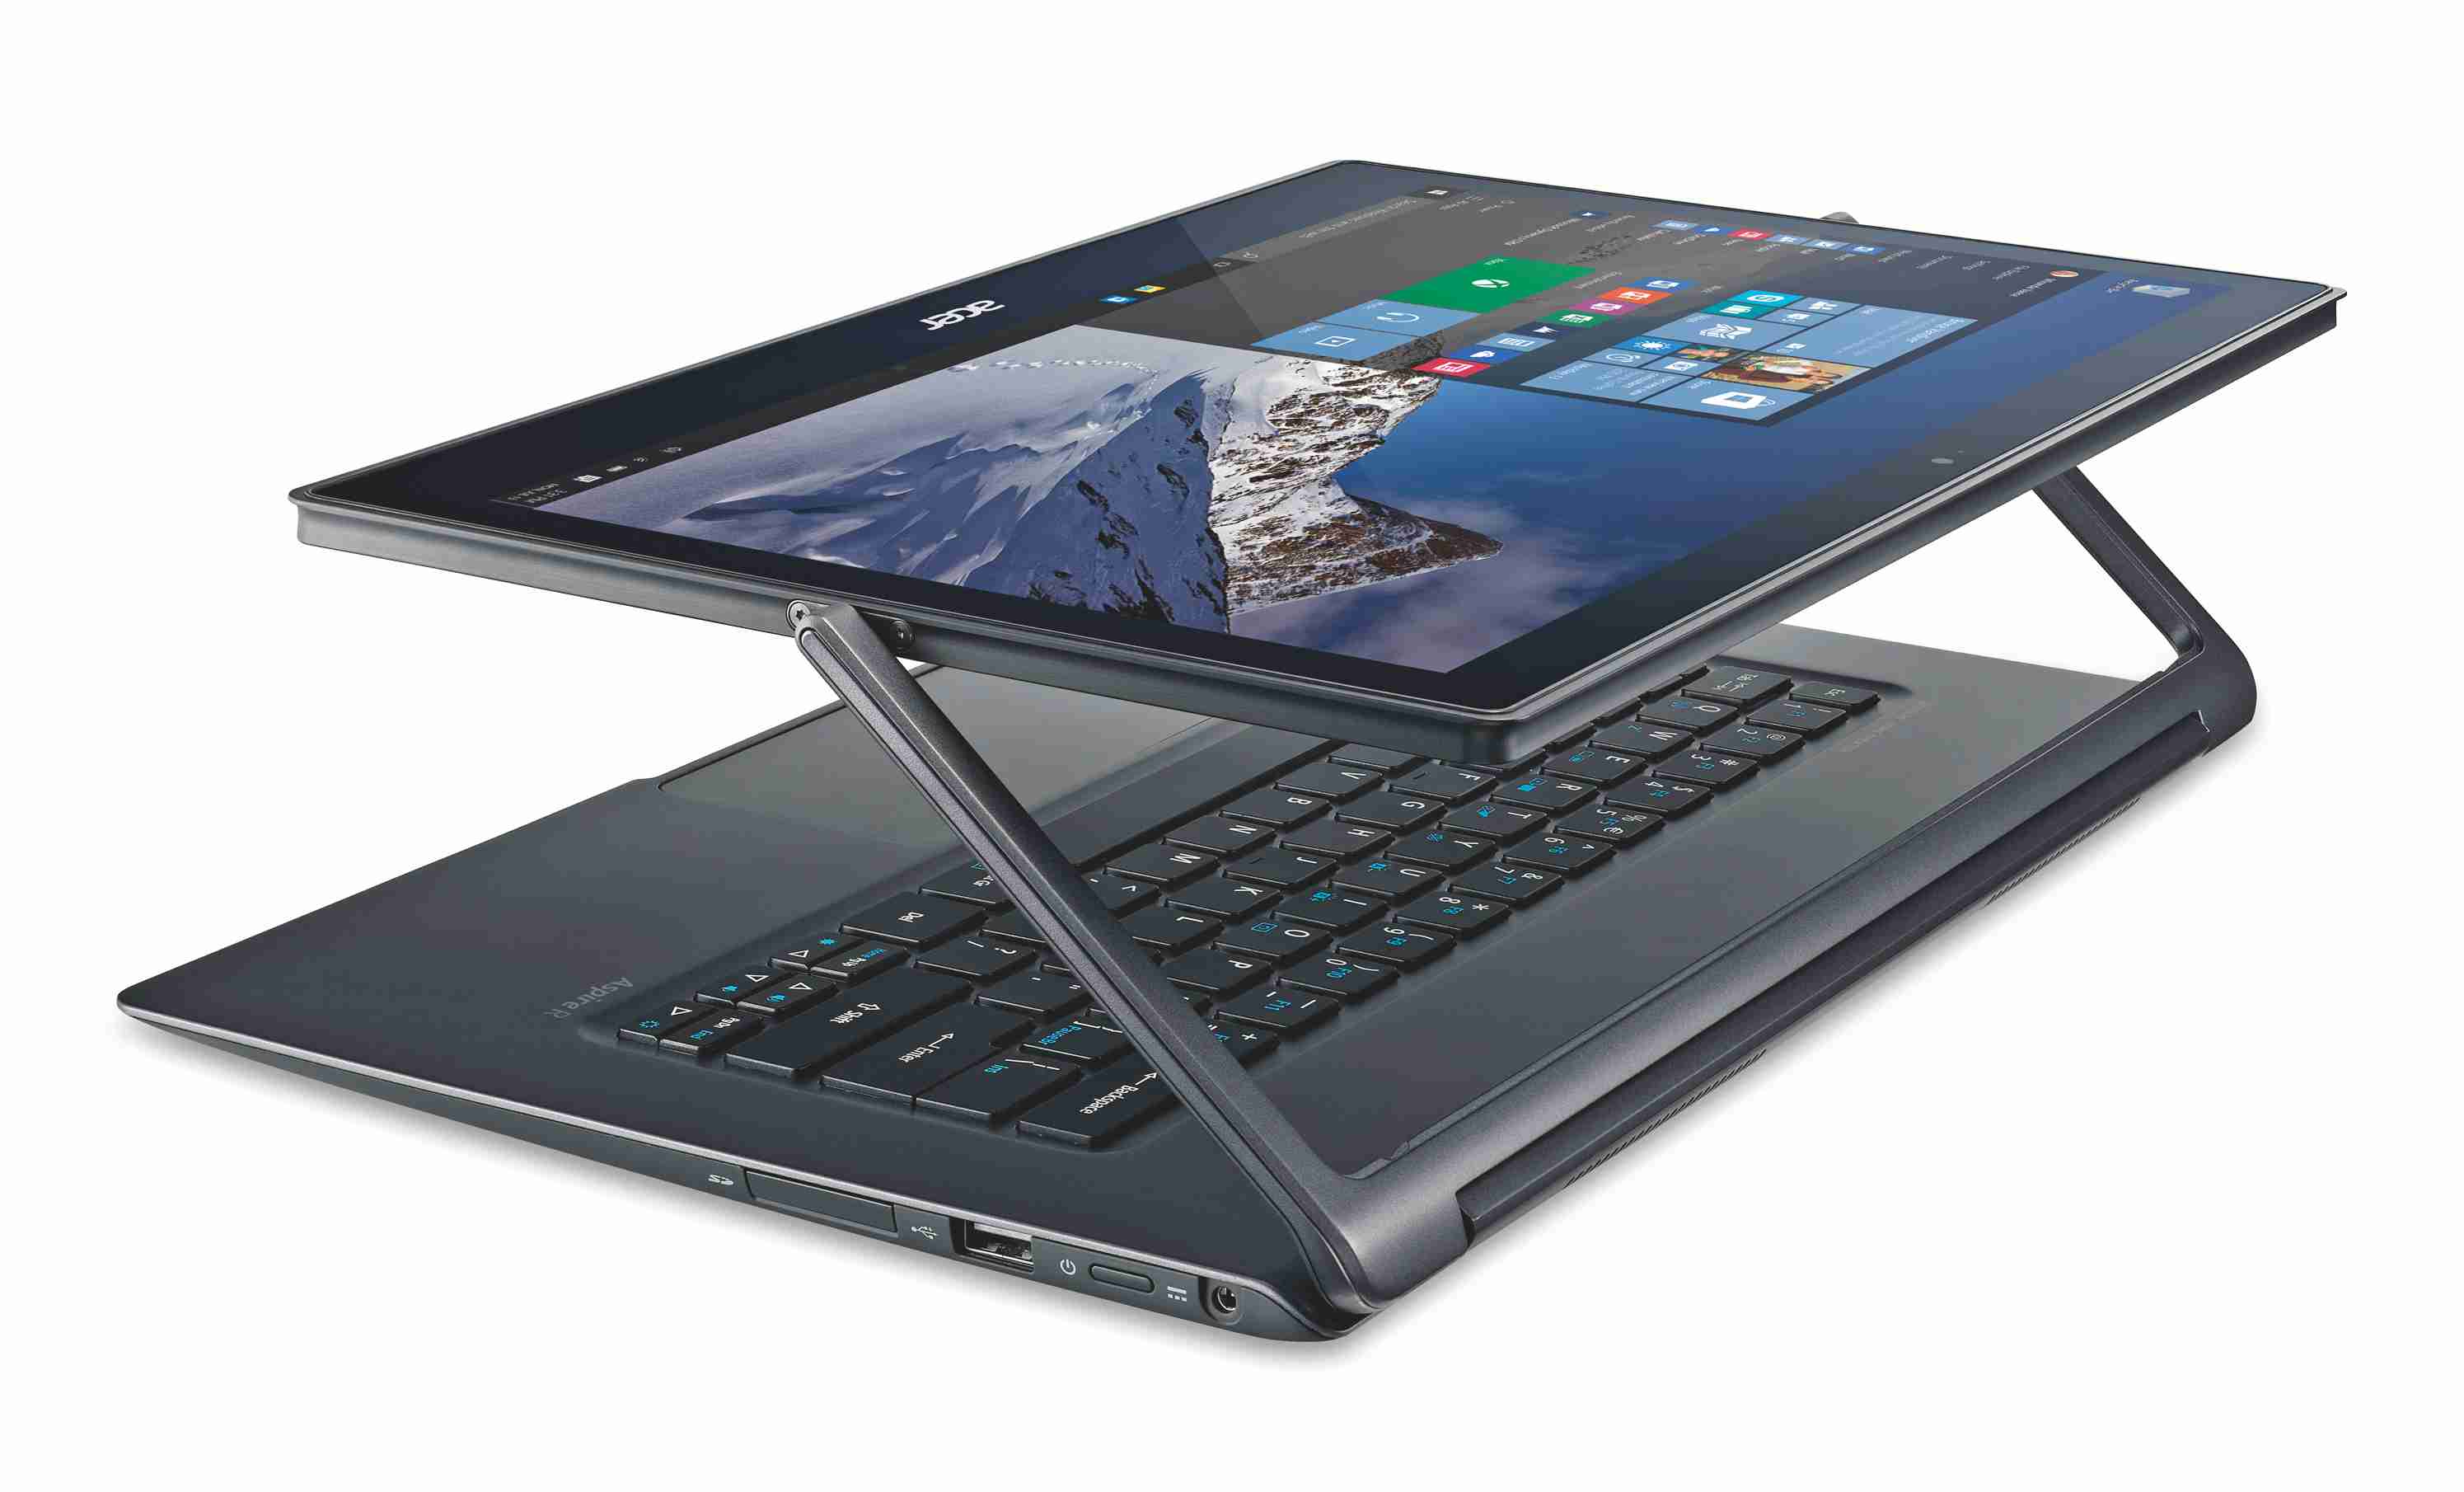 Купить ноут гибрид. Ноутбук трансформер Acer Aspire r7. Aspire r7-571g. Acer ноутбук планшет трансформер 2020. Acer Aspire 7 планшет ноутбук.